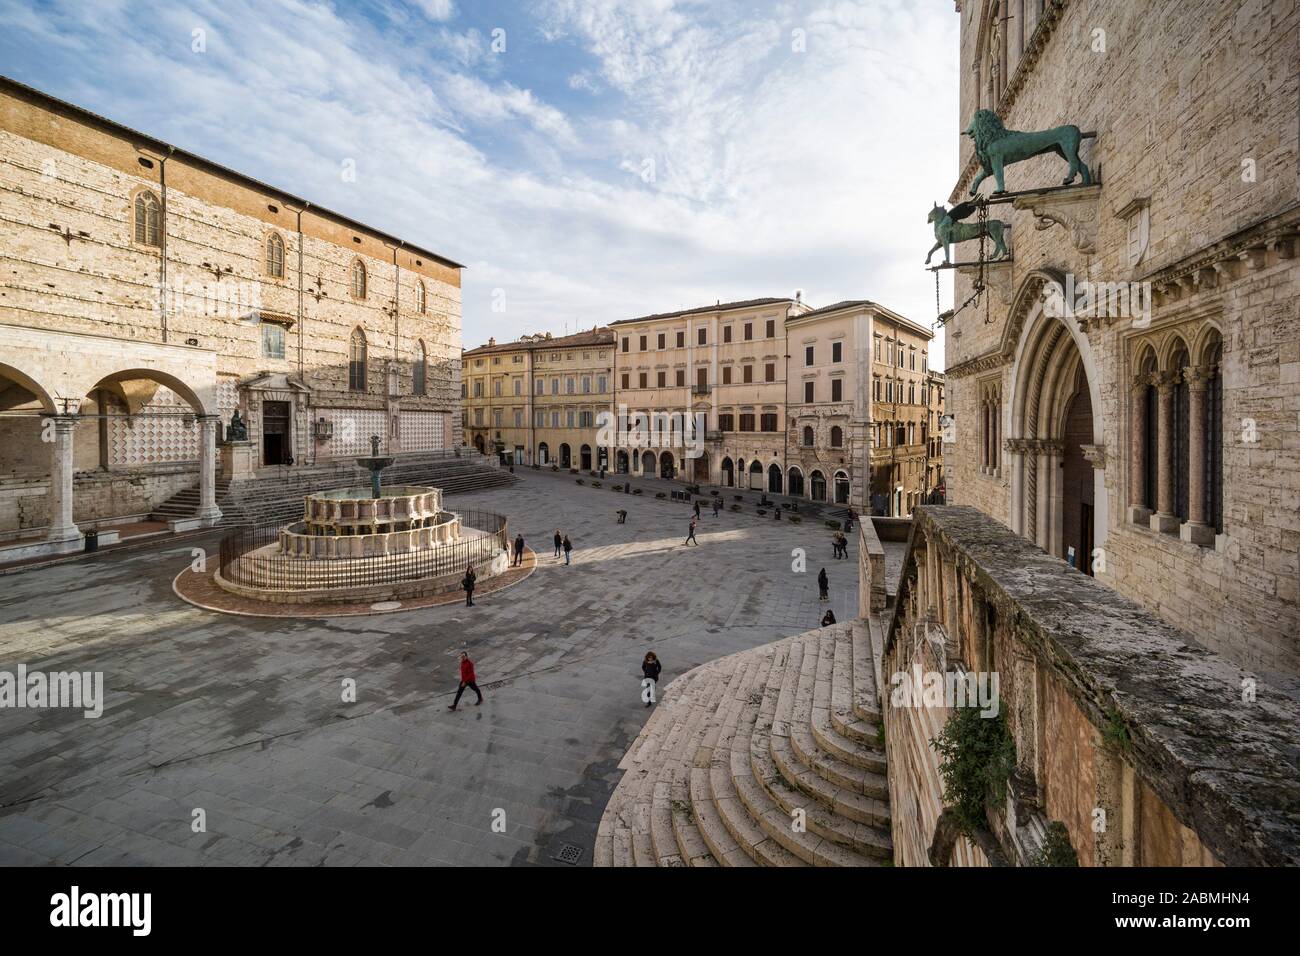 Perugia. Italy. The central Piazza IV Novembre, the Cattedrale di San Lorenzo and Fontana Maggiore to the left and Palazzo dei Priori (right). Stock Photo